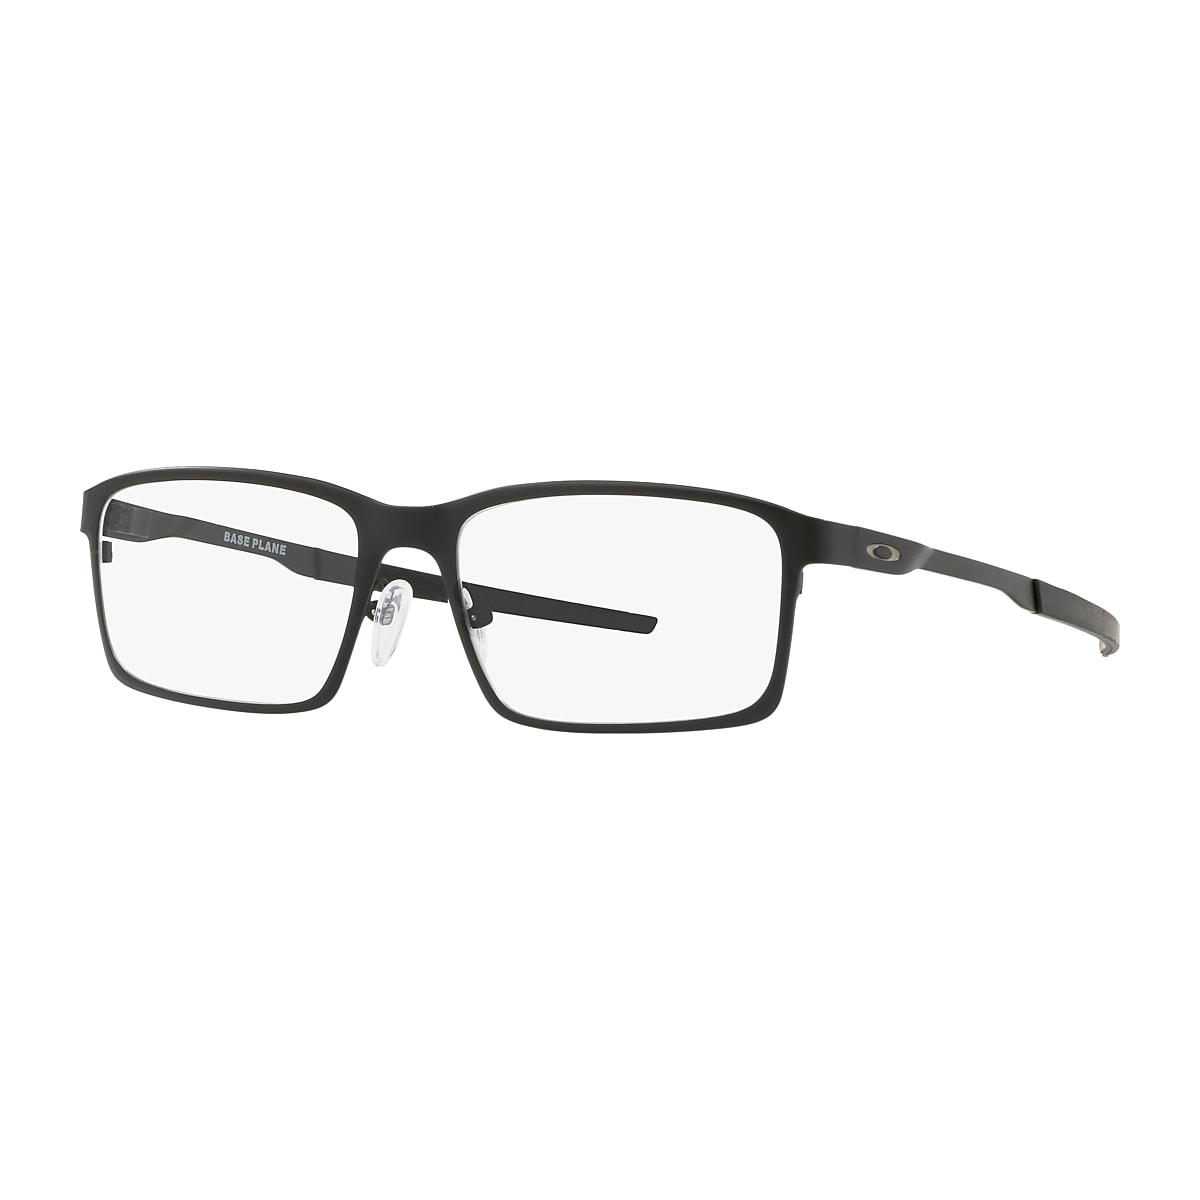 Top 40+ imagen oakley men's reading glasses - Abzlocal.mx